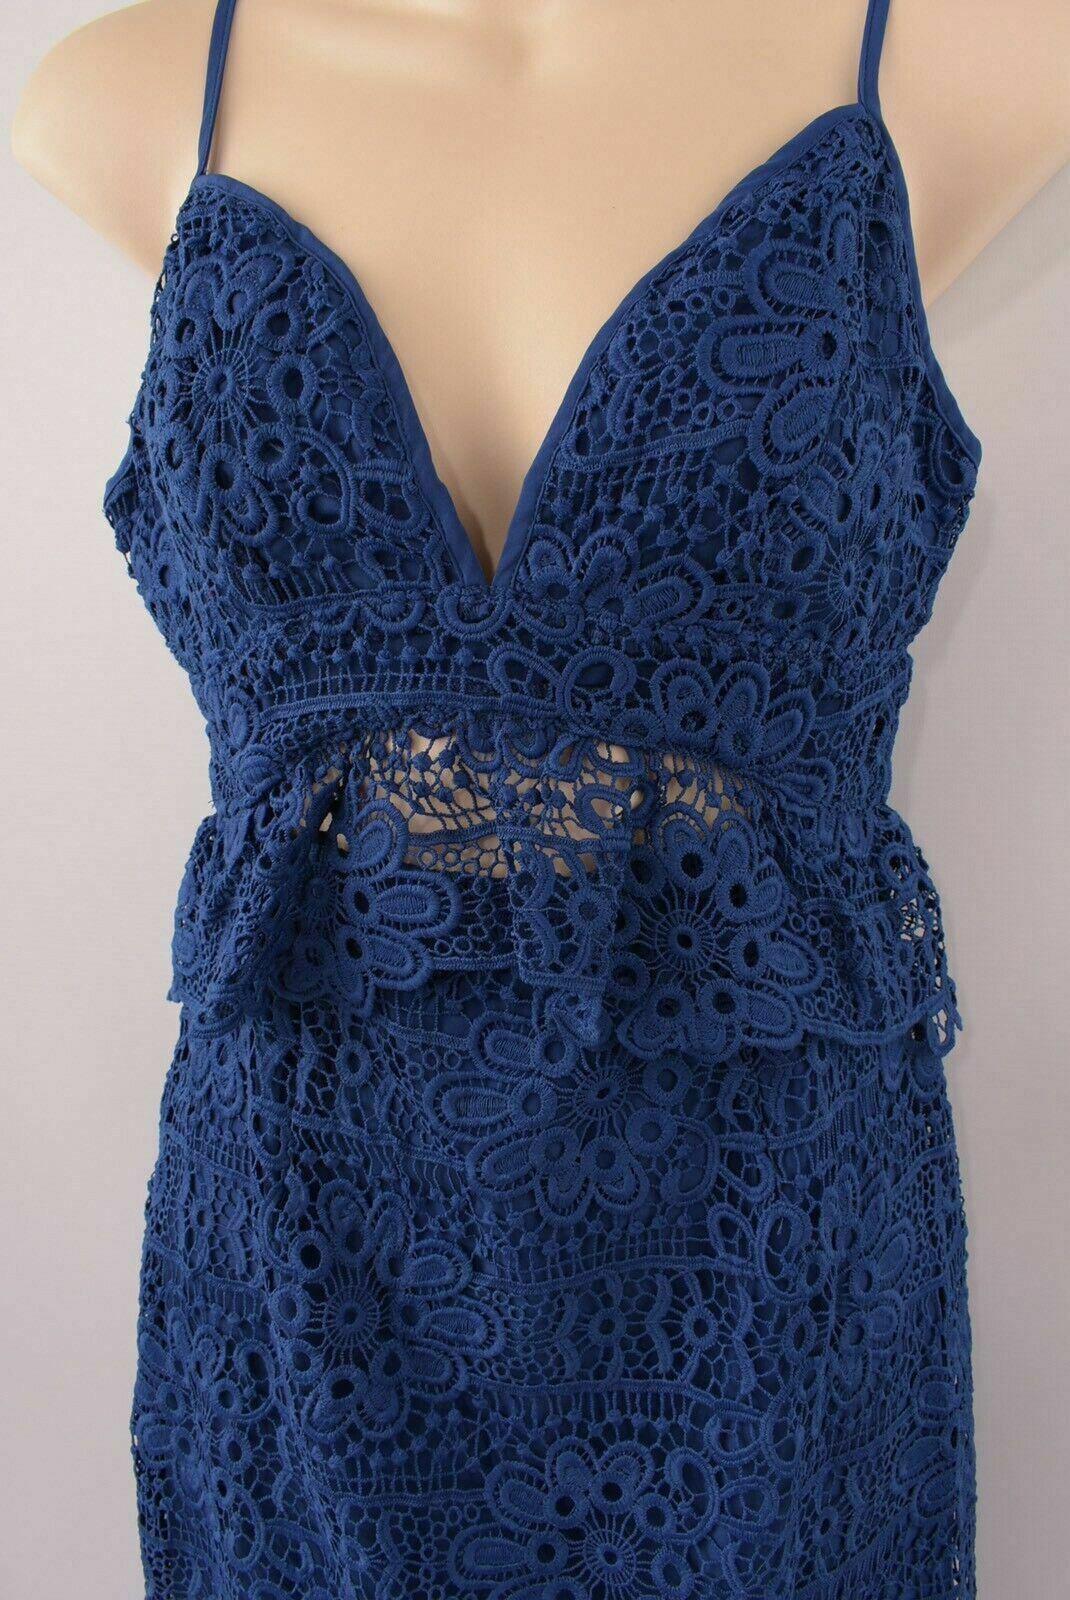 GUESS Women's Crochet Spaghetti Straps Dress, Blue, size UK 4 UK 6